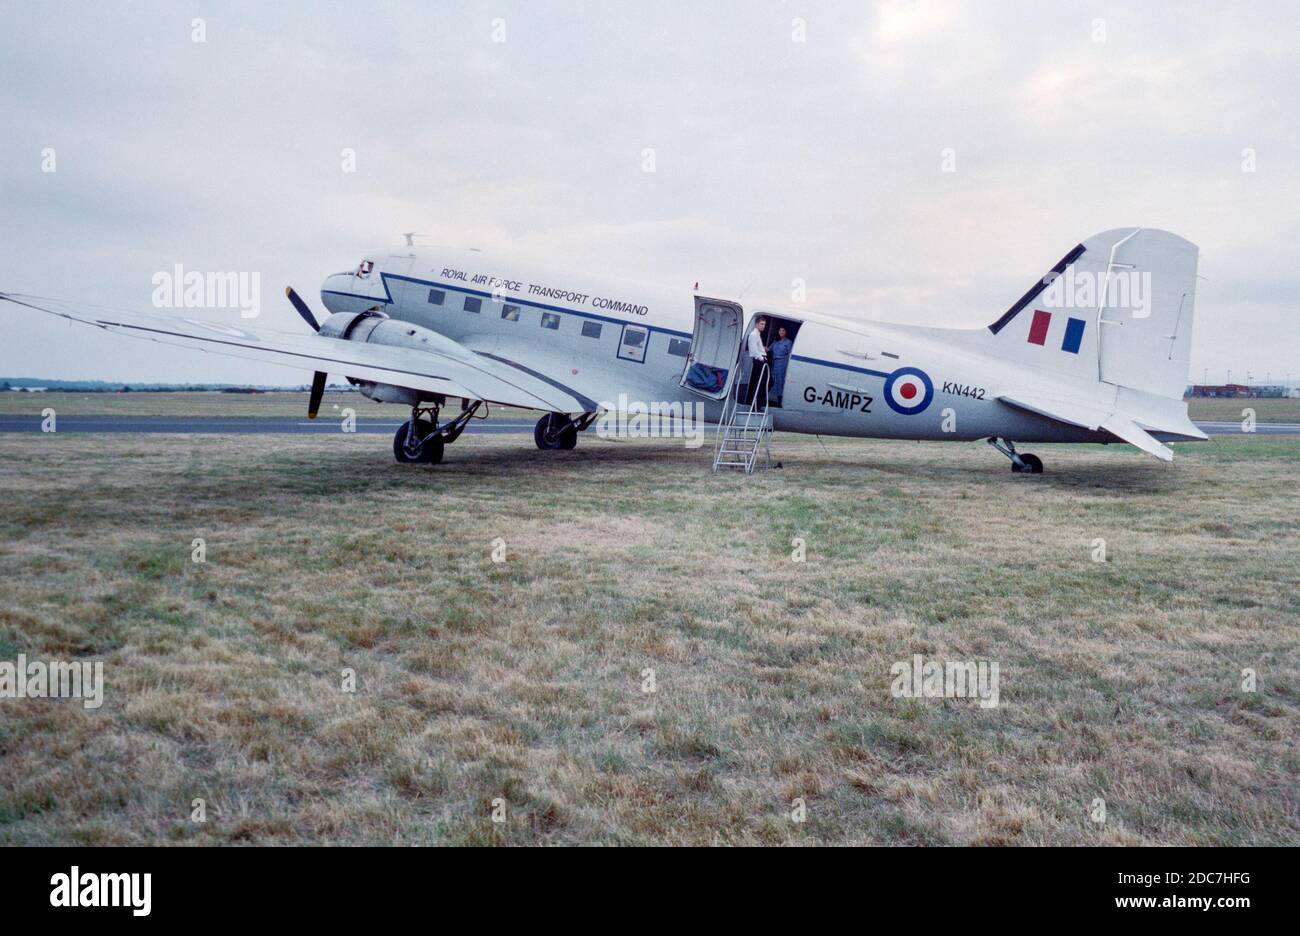 Photographie en 1999 d'un Douglas DC-3 Dakota, ou C-47, pris en Angleterre, immatriculé G-AMPZ, peint dans les couleurs du British Royal Air Force transport Command, avec le numéro de série militaire KN442. L'avion est stationné sur de l'herbe avec deux personnes visibles dans la porte. Banque D'Images